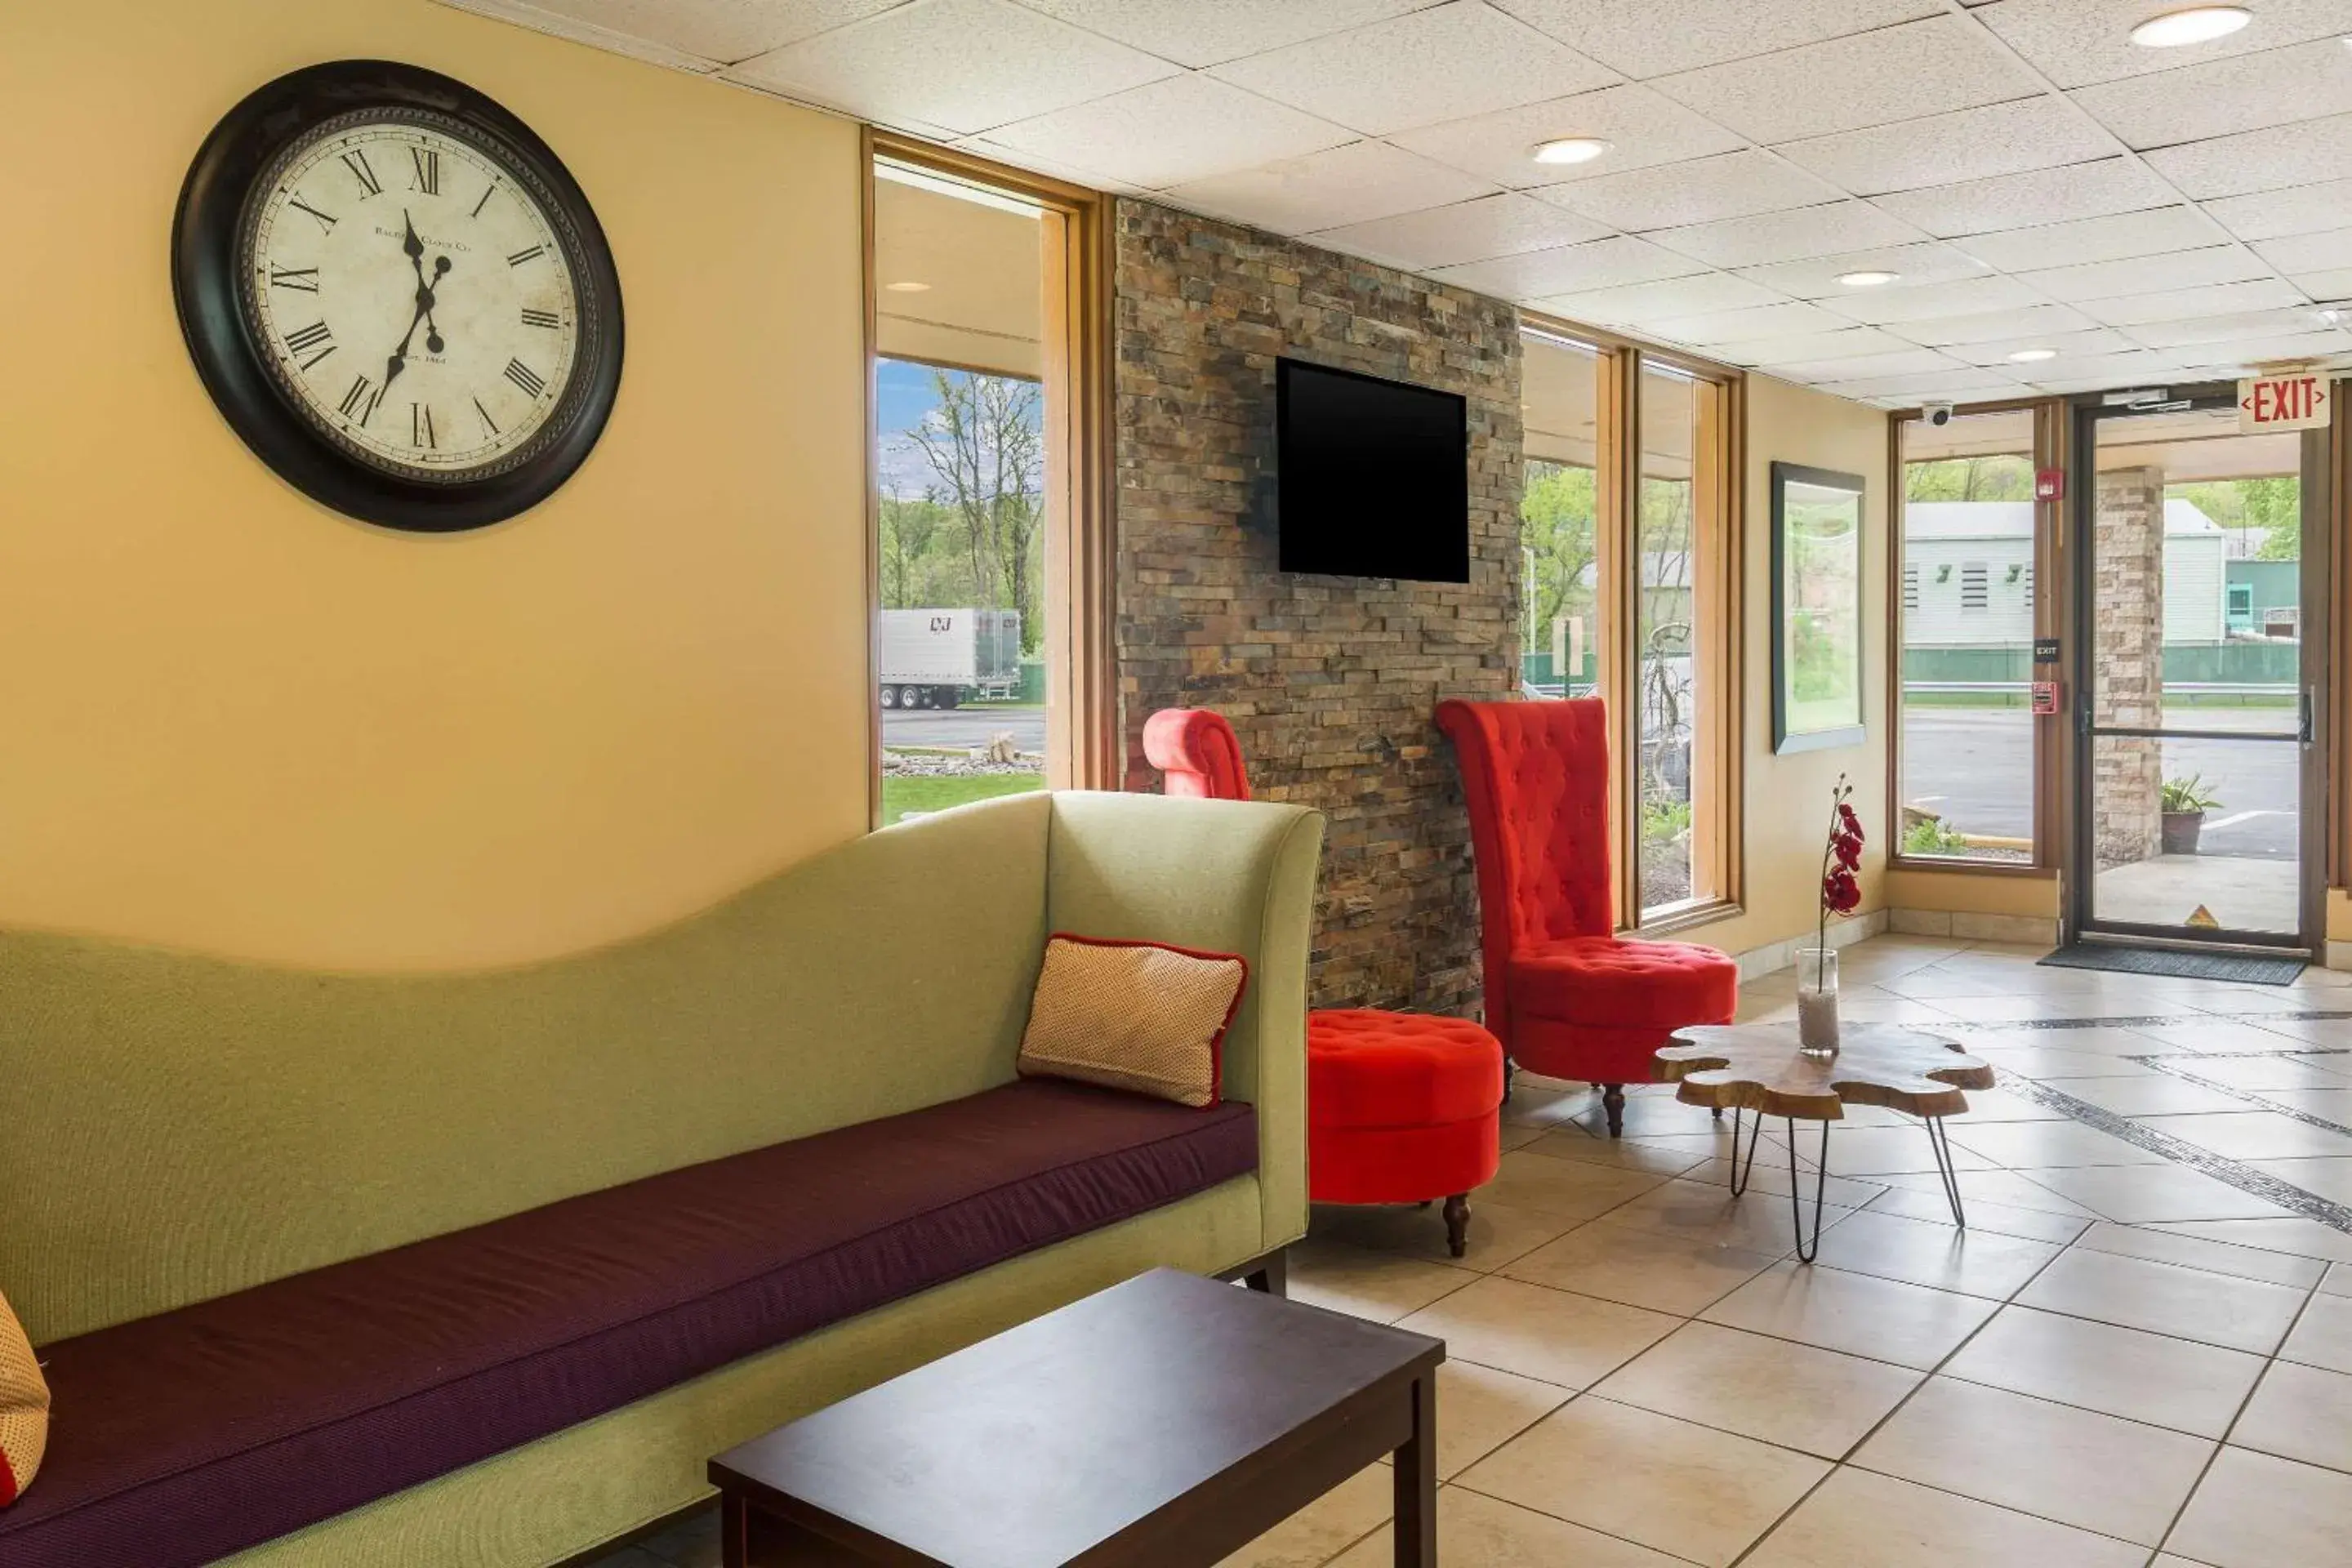 Lobby or reception, Lobby/Reception in Clarion Inn & Suites Stroudsburg - Poconos